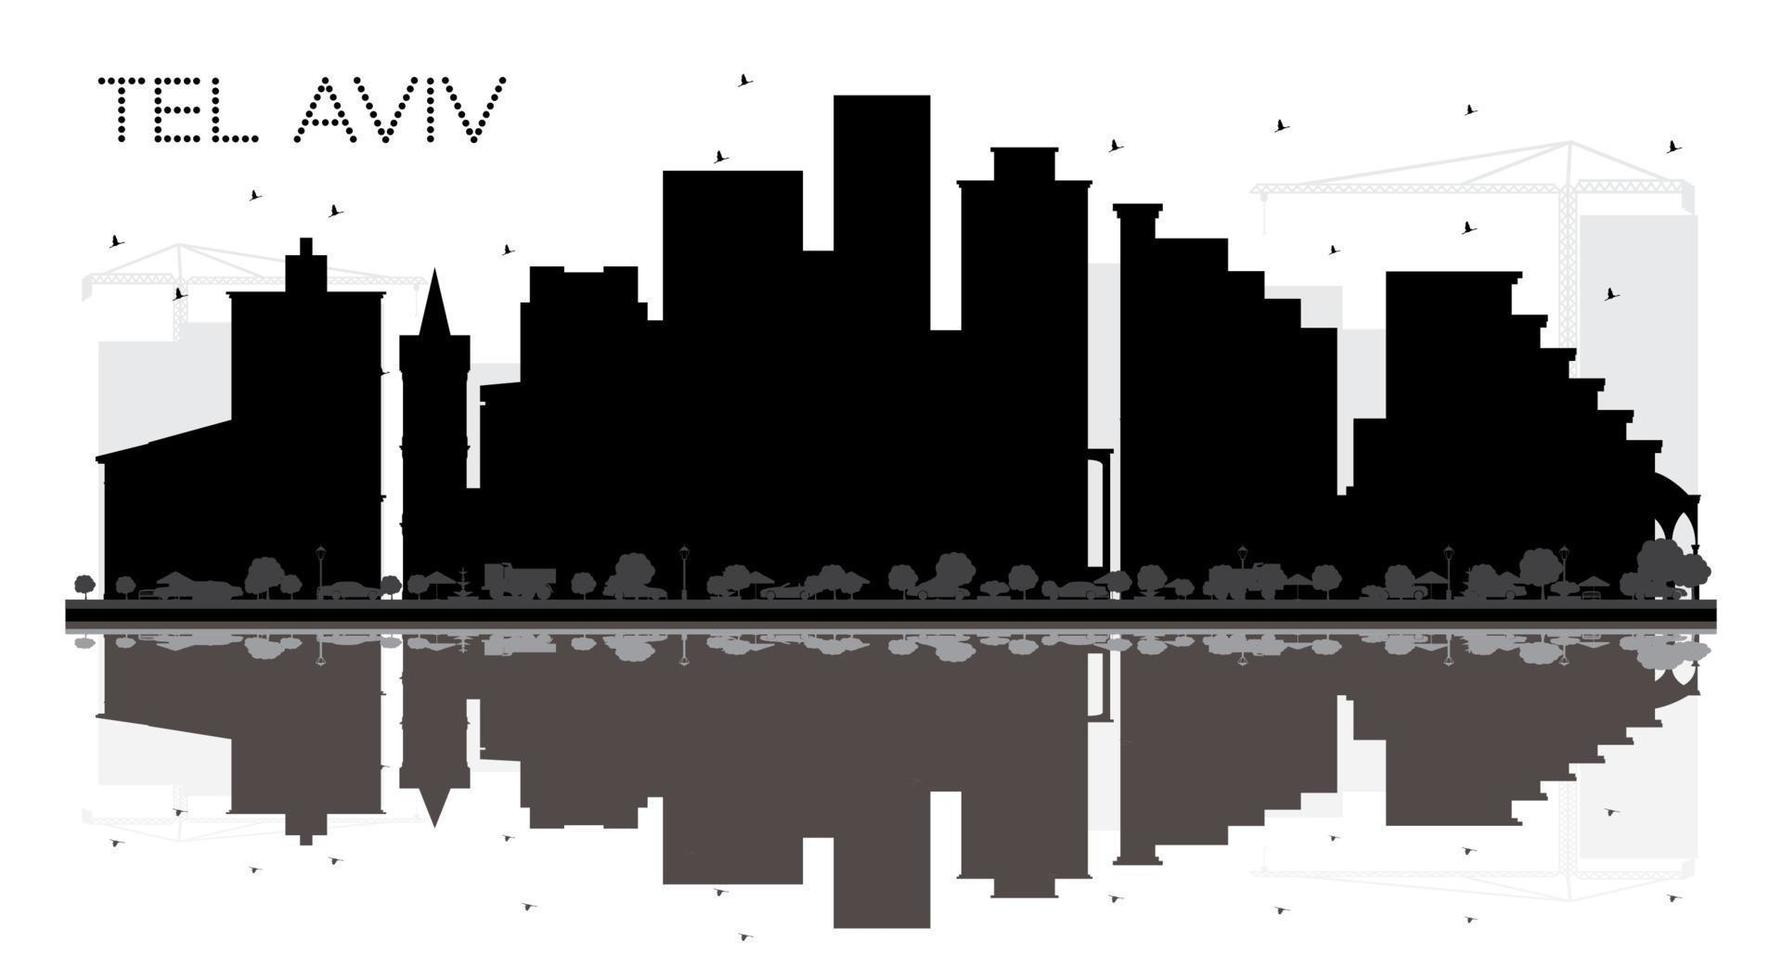 tel aviv israel city skyline silueta en blanco y negro con reflejos. vector